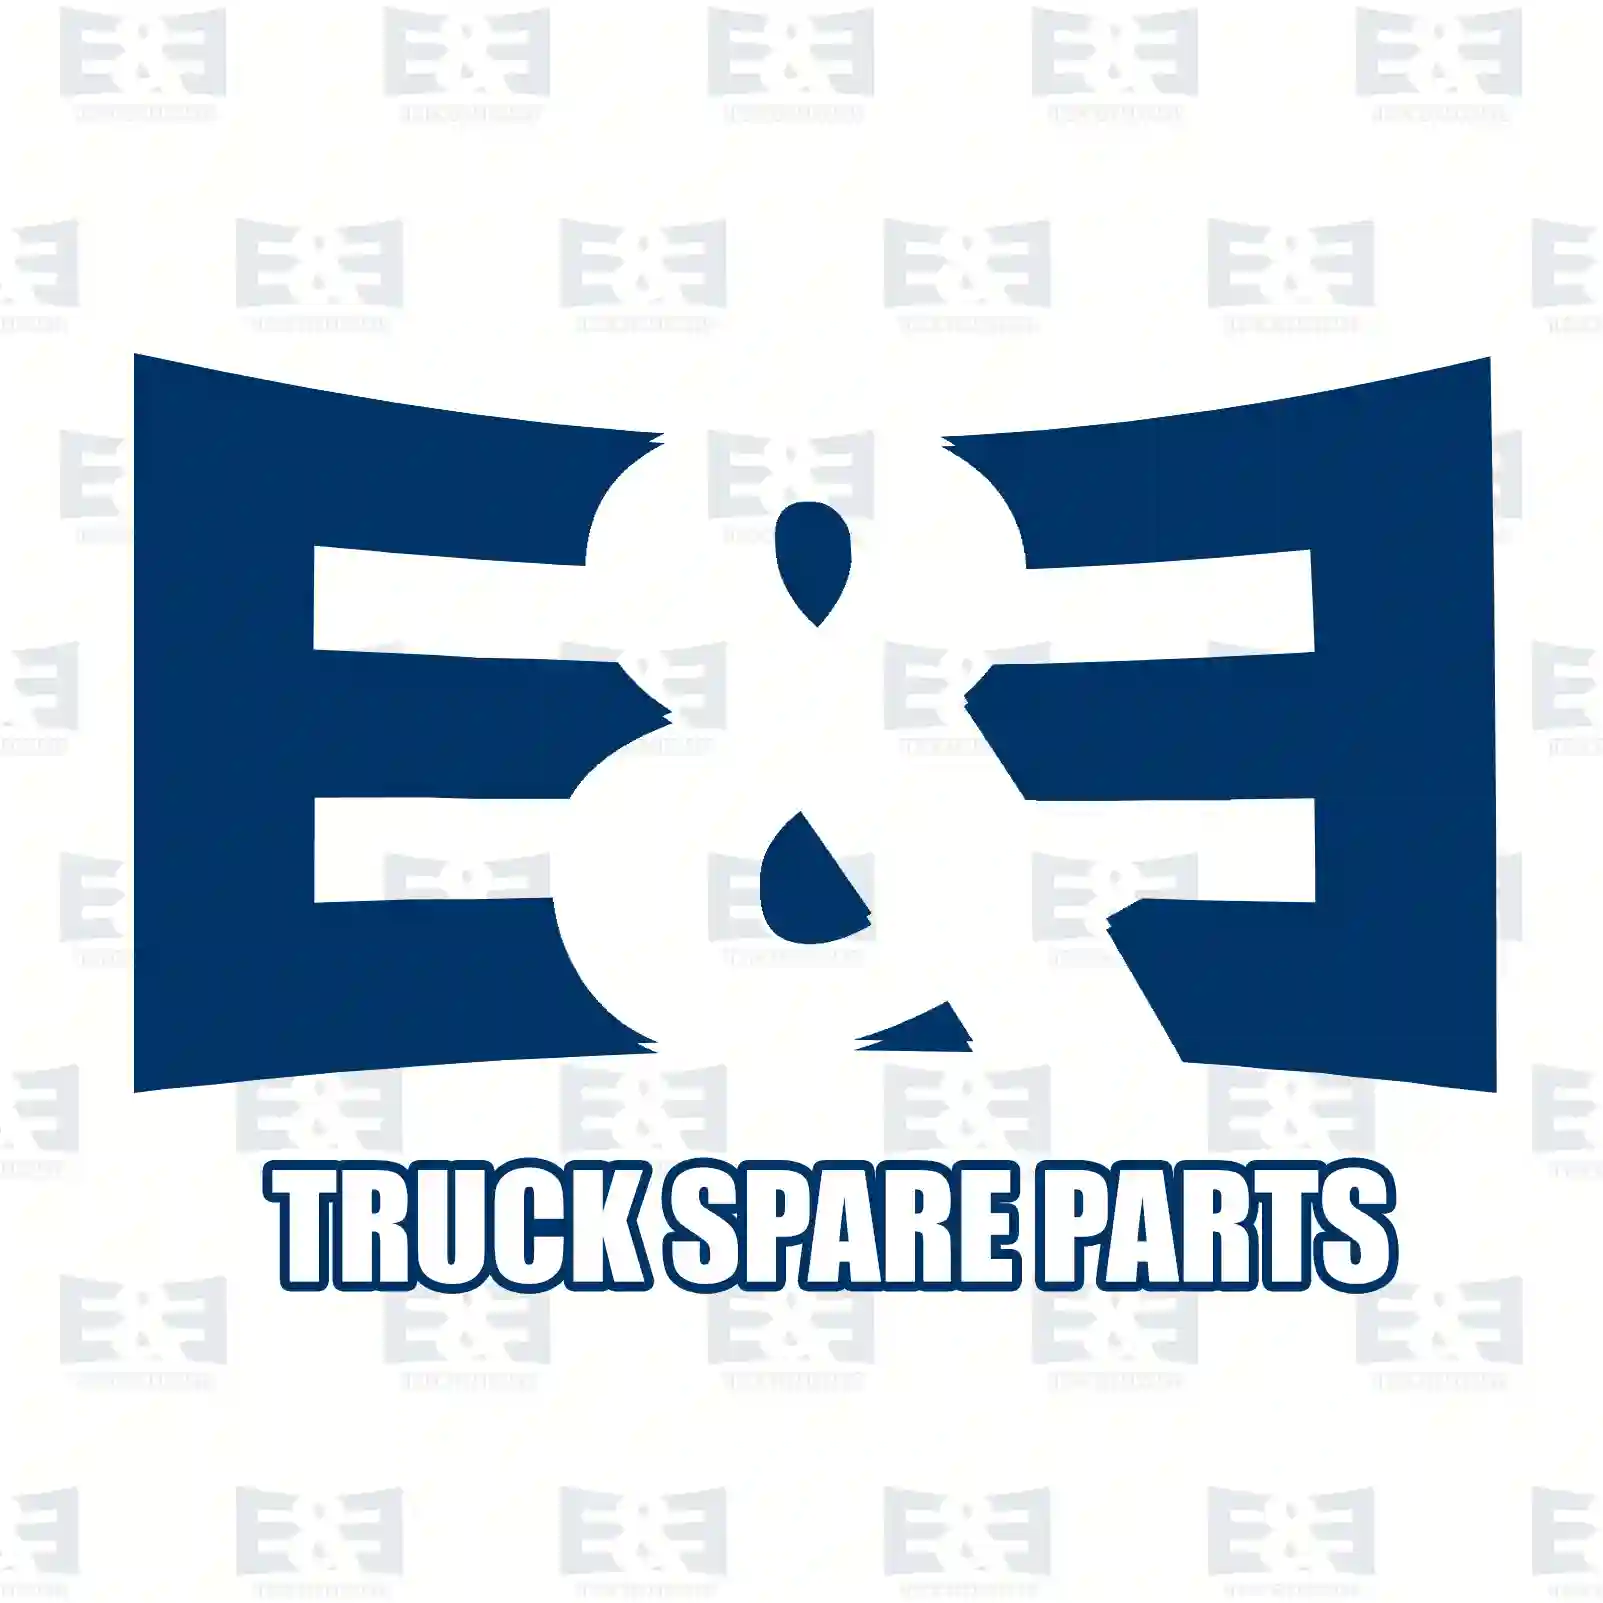 Brake cylinder, 2E2293388, 1358870, 1361988, 1802695, 1944537 ||  2E2293388 E&E Truck Spare Parts | Truck Spare Parts, Auotomotive Spare Parts Brake cylinder, 2E2293388, 1358870, 1361988, 1802695, 1944537 ||  2E2293388 E&E Truck Spare Parts | Truck Spare Parts, Auotomotive Spare Parts